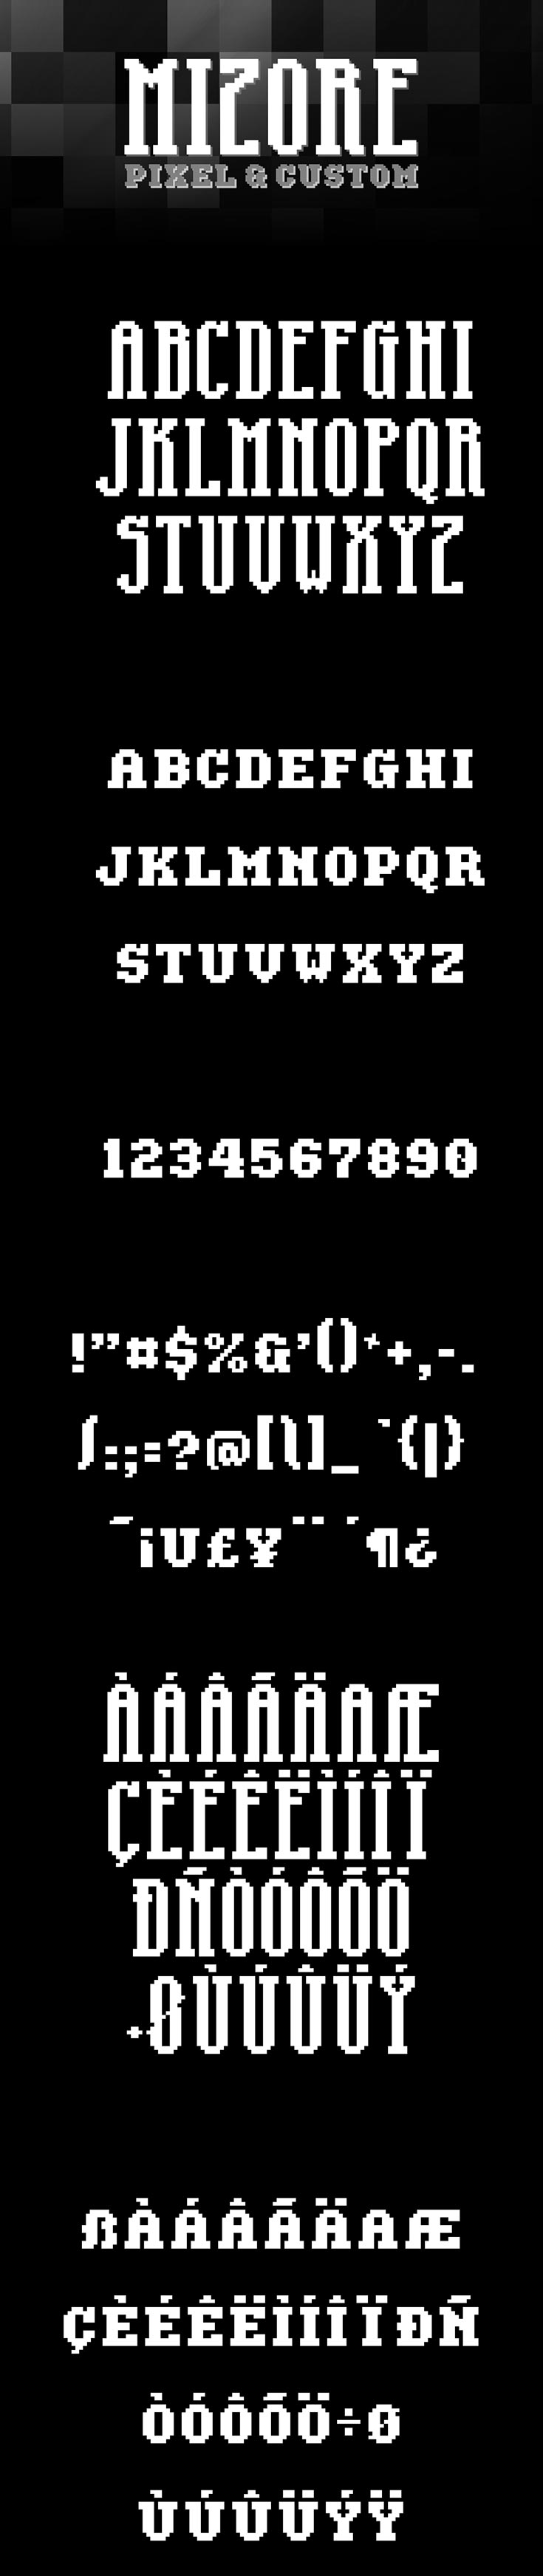 Free Mizore Pixel Font